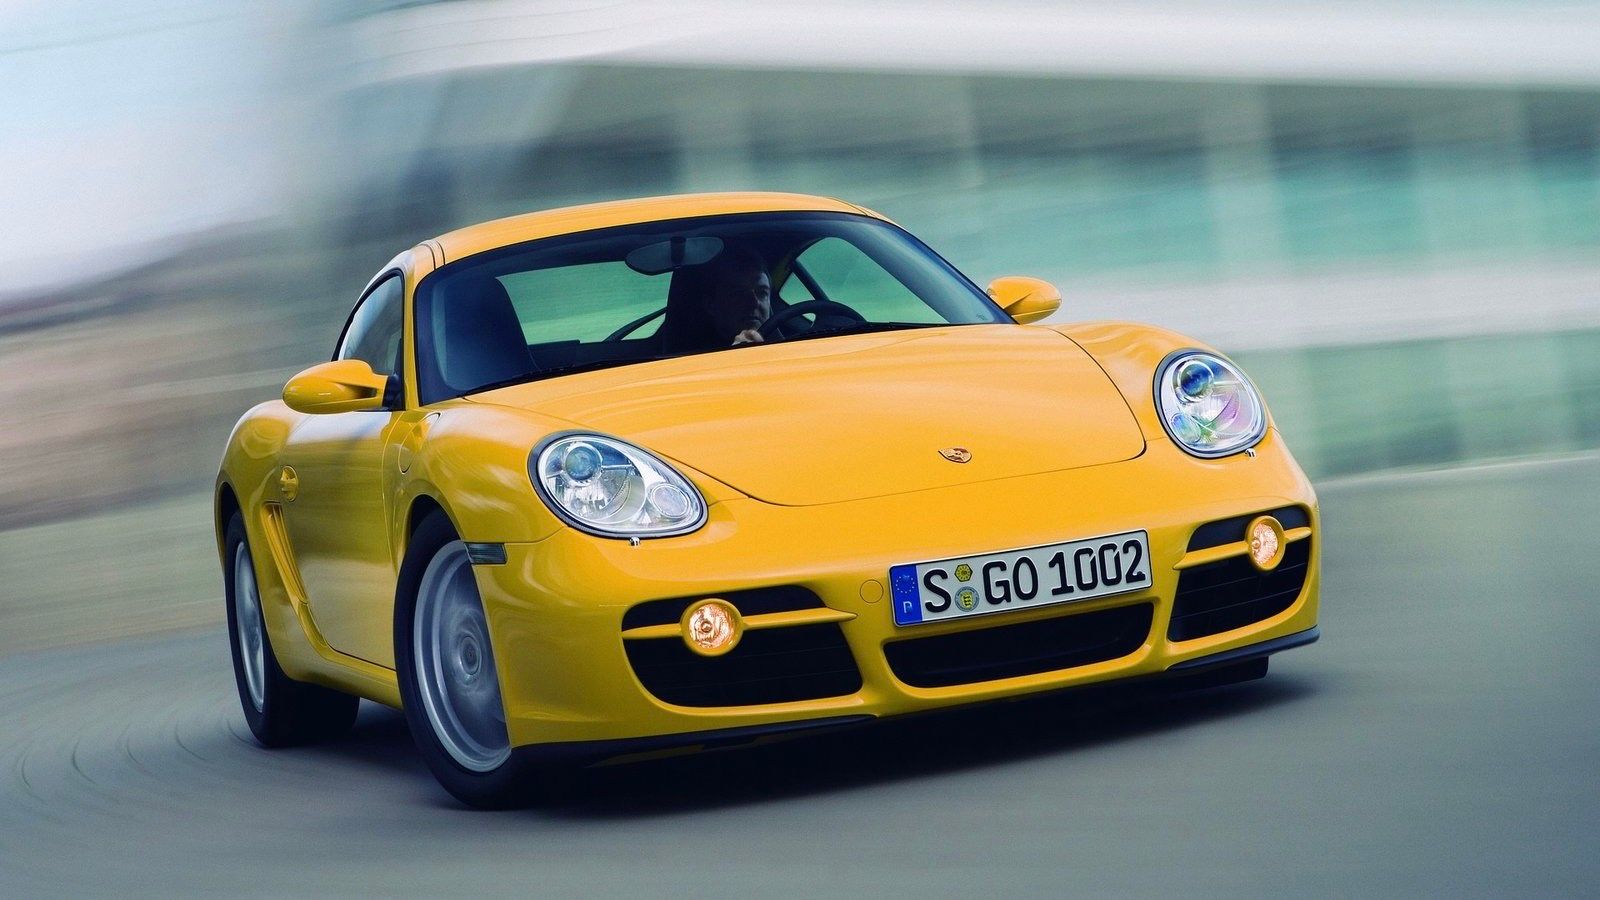 Porsche Cayman 2007